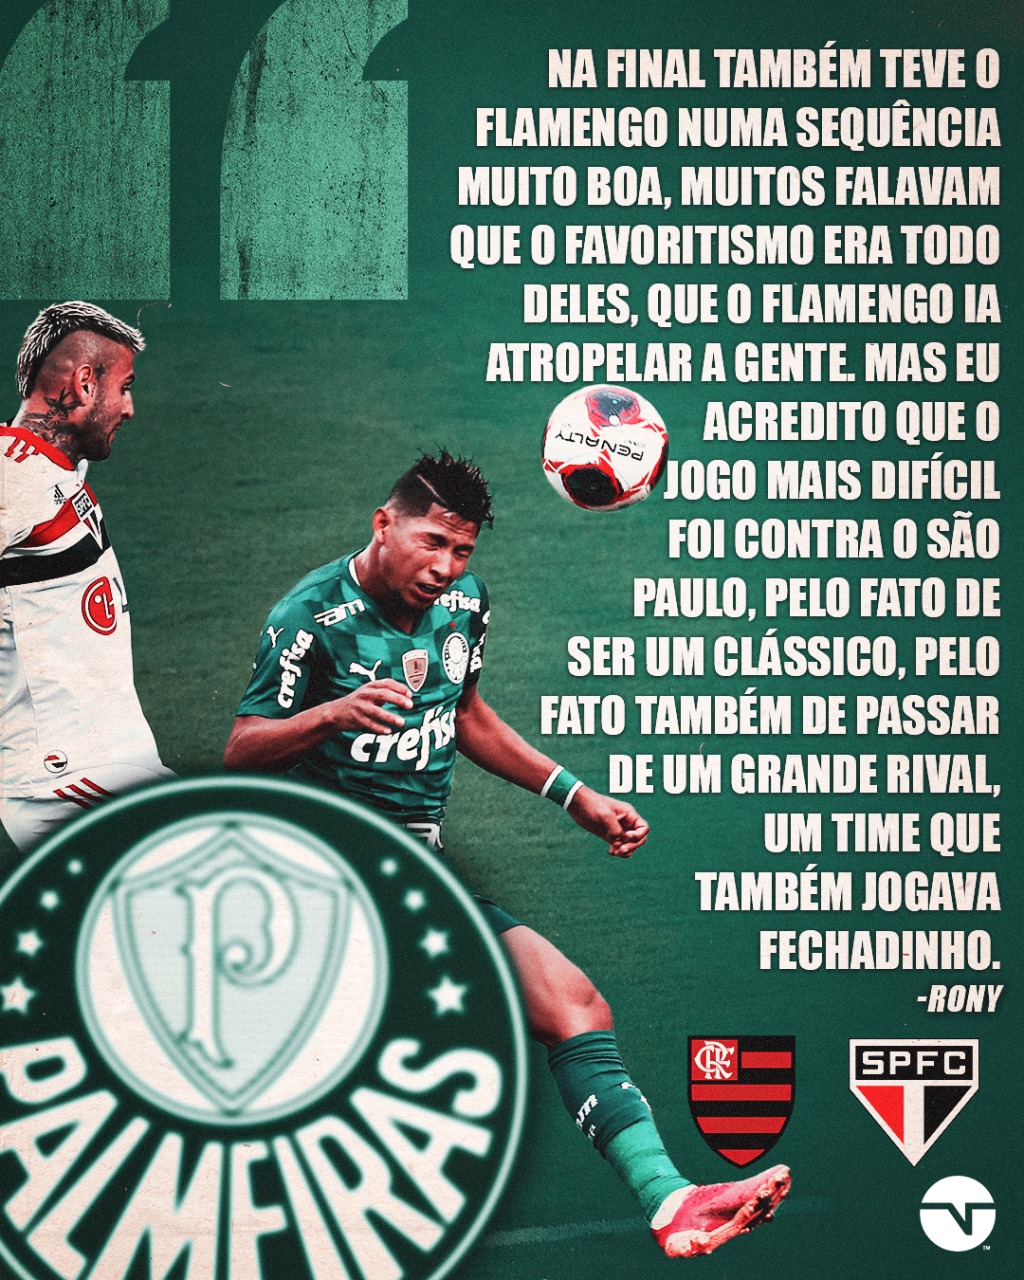 TNT Sports Brasil - Ainda não conhece o nosso snapchat? Aqui você garante  vários conteúdos como o Rei do Snap, Pergunta surpresa, Quiz do EI e muito  mais! É só adicionar: esp_interativo